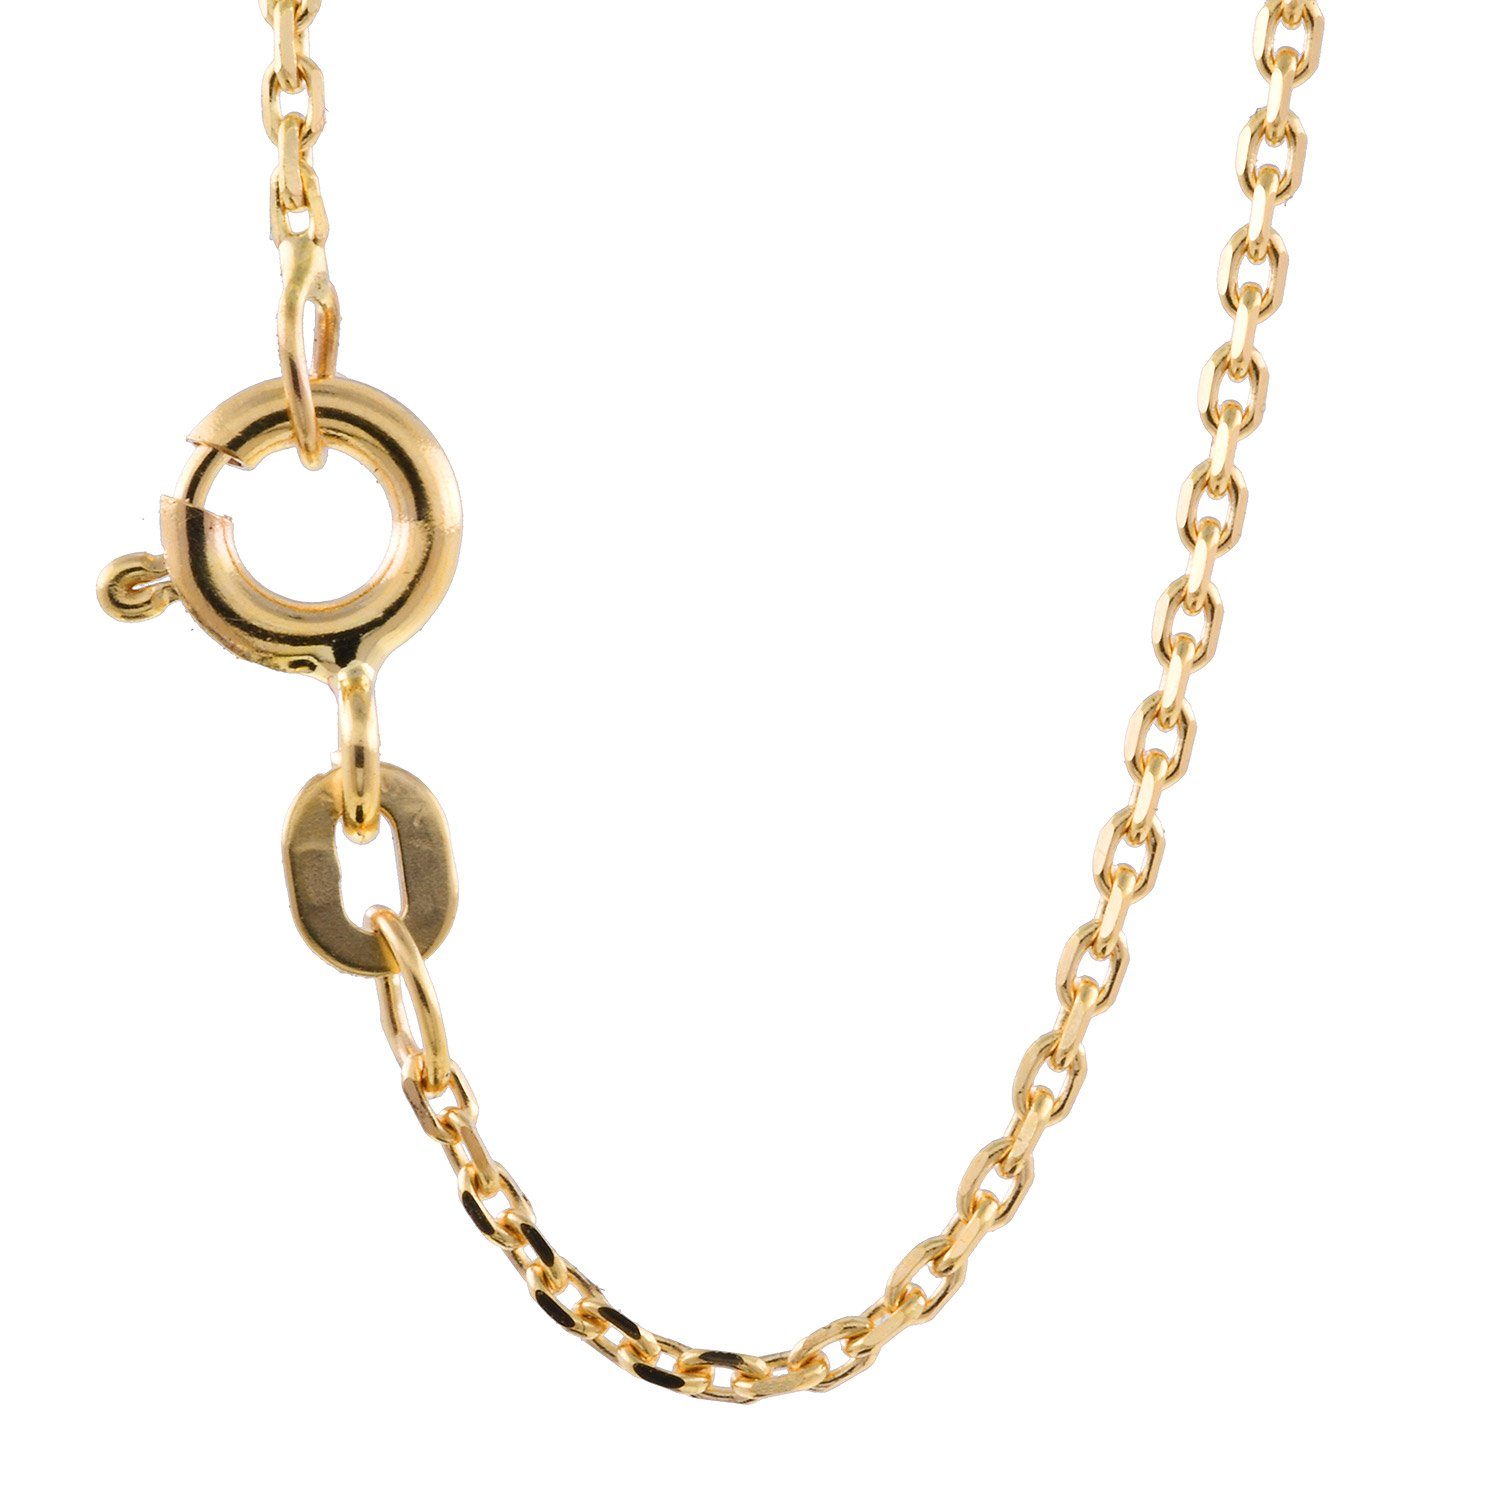 Herren Schmuck HOPLO Goldkette 1,3 mm 45 cm 585 - 14 Karat Gold Halskette Ankerkette diamantiert massiv Gold hochwertige Goldket